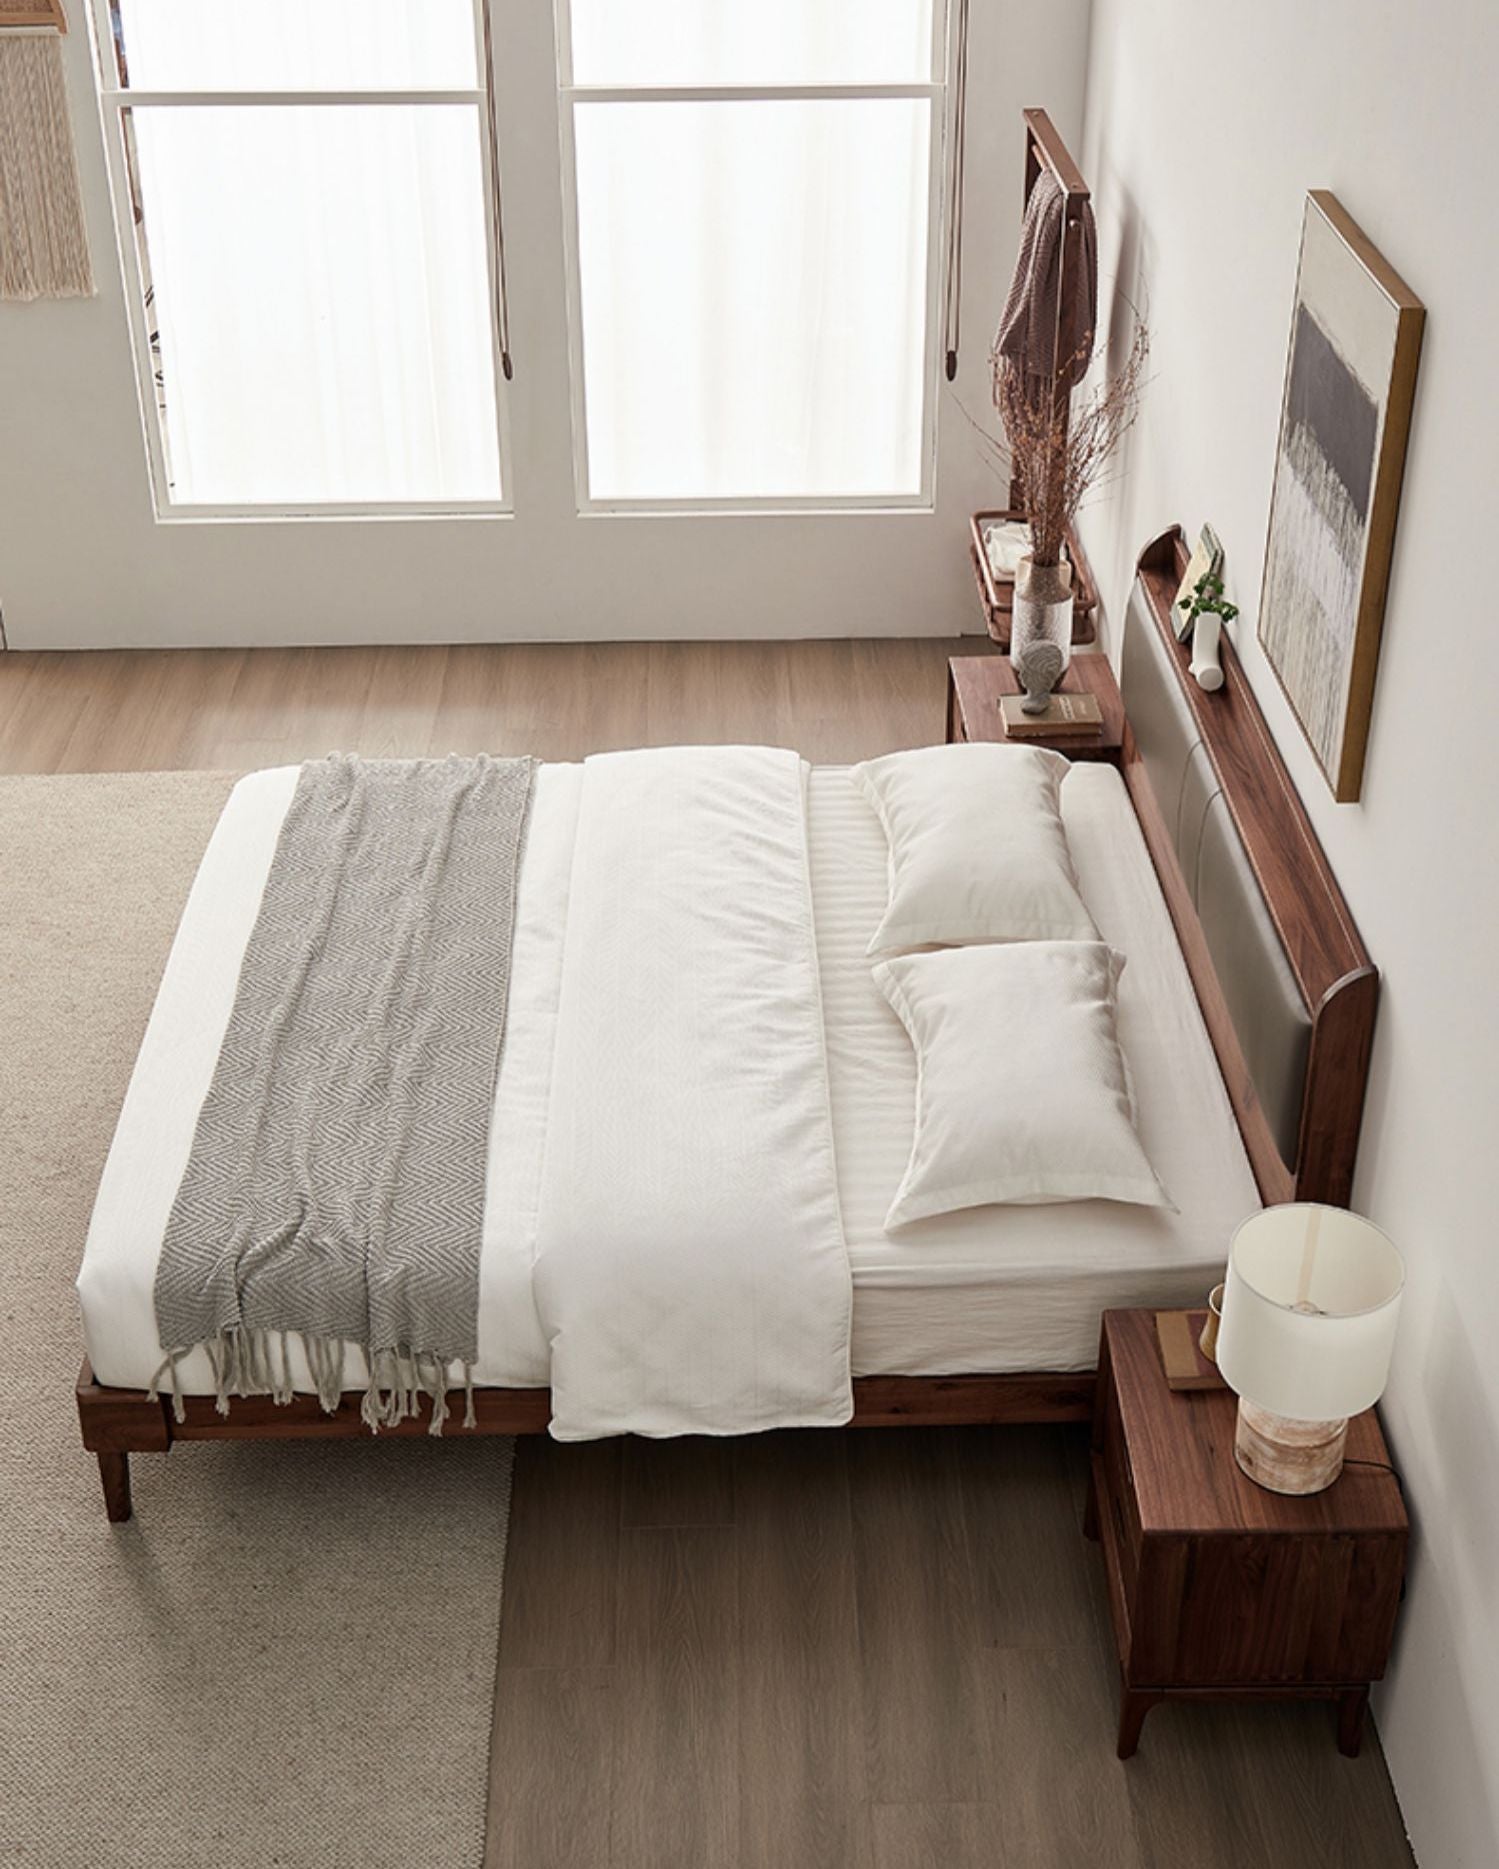 هيكل سرير من خشب الجوز الصلب والجلد، وسرير من الجلد مصنوع من الخشب الصلب